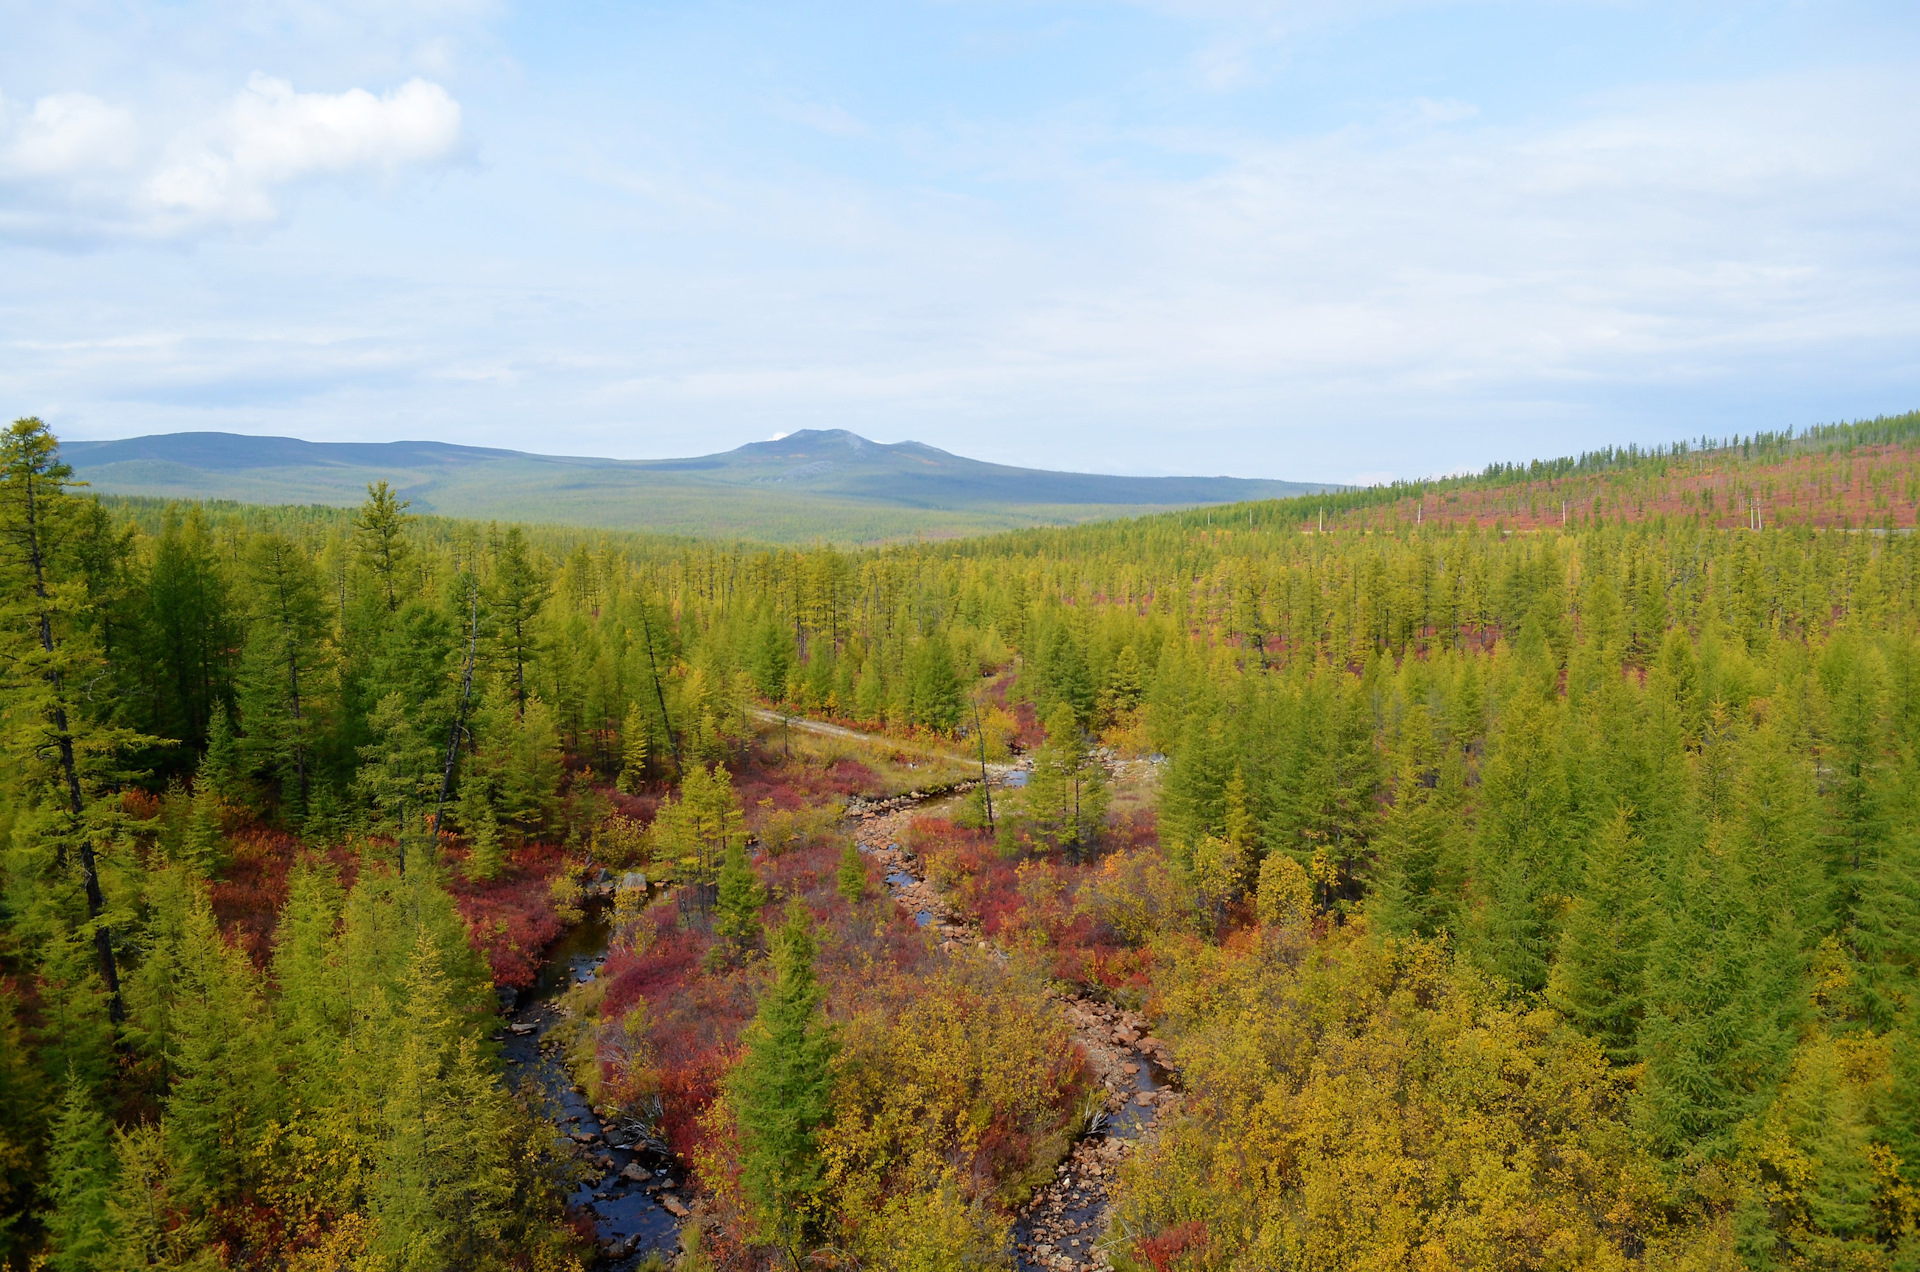 Два лесных пожара действуют в Якутии